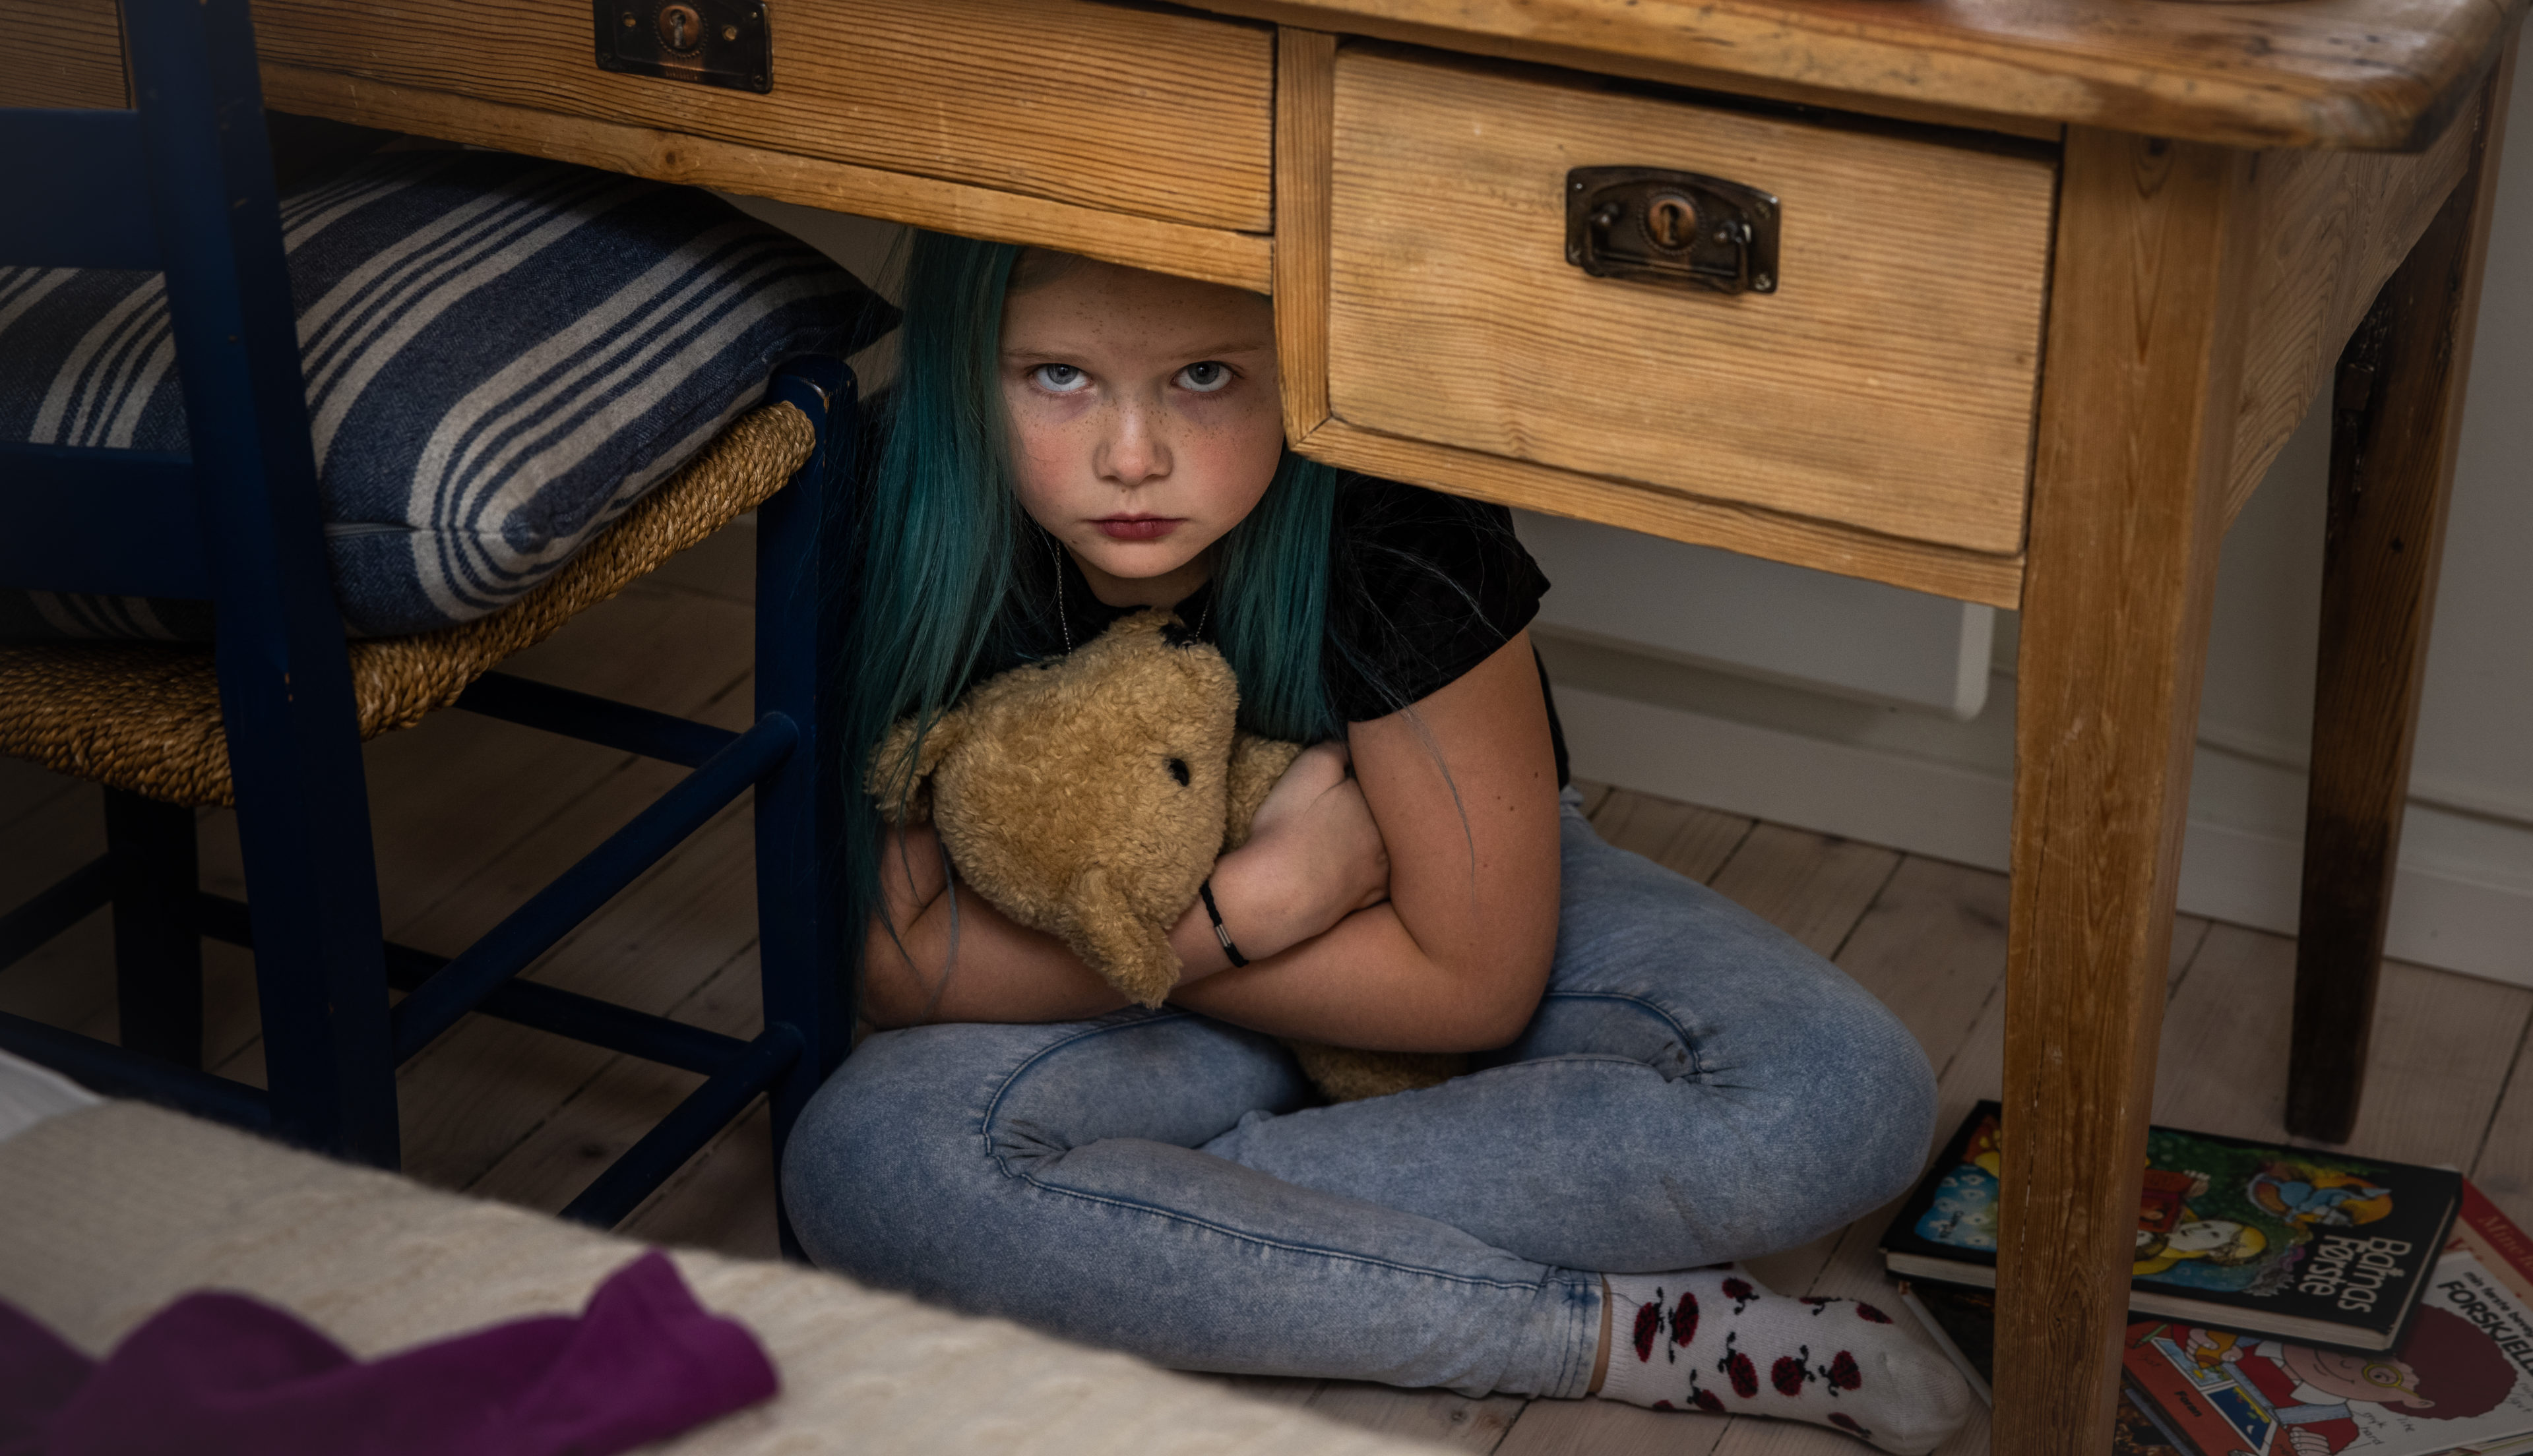 En ung jente med blått hår gjemmer seg under pulten med en beskyttende arm rundt bamsen sin mens hun stirrer alvorlig opp mot kameraet.